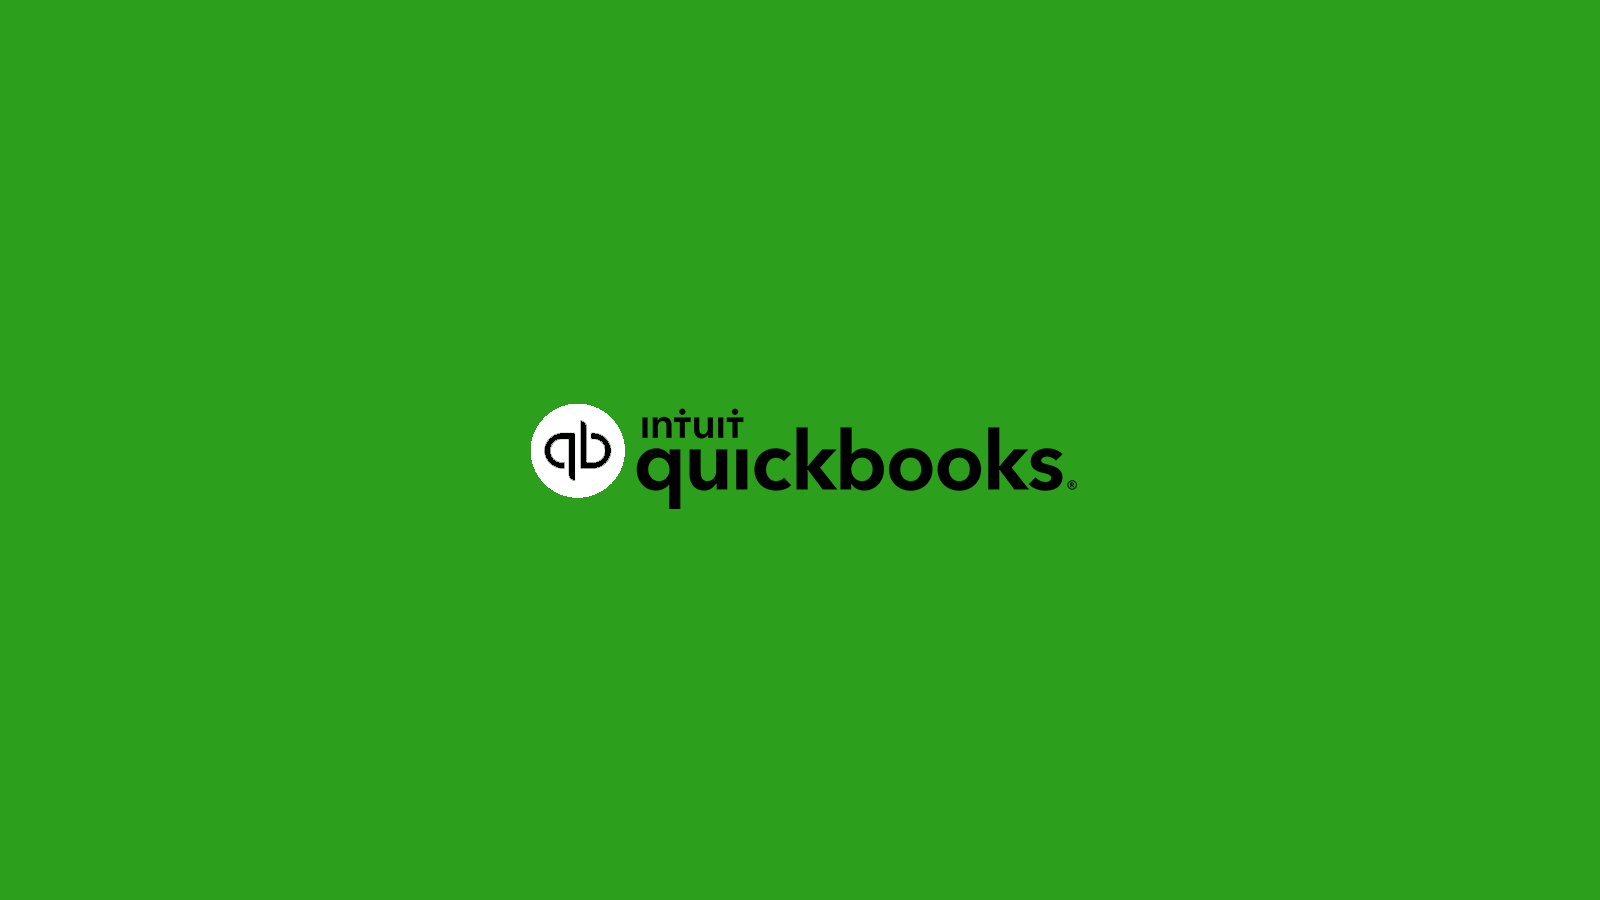 Quickbooks Pro 2017